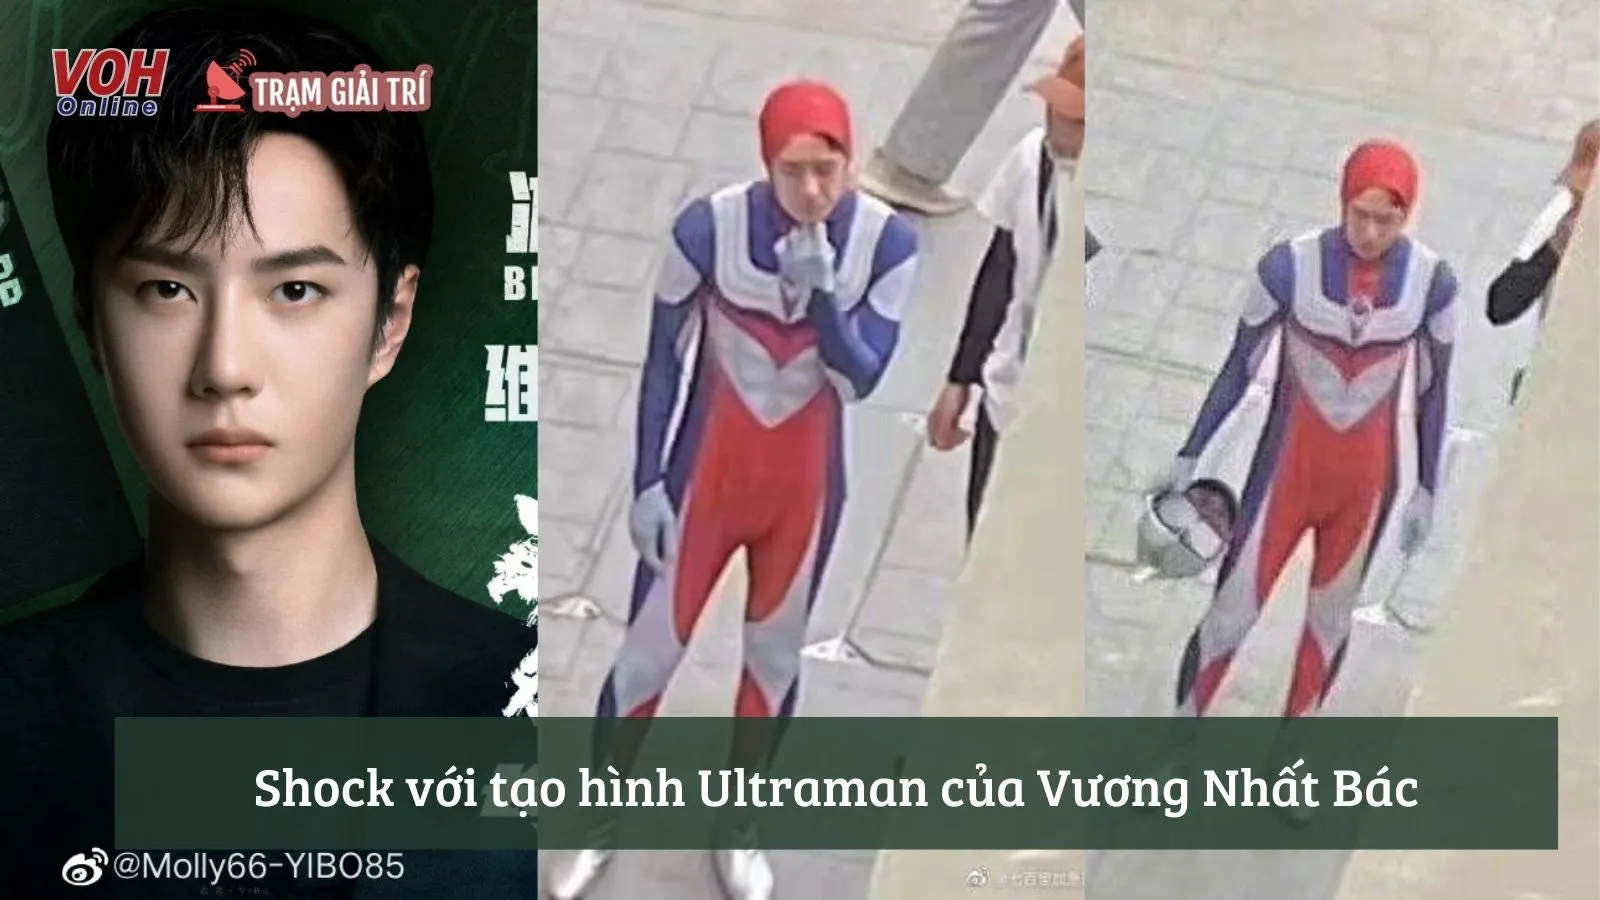 Vương Nhất Bác cosplay Ultraman trong Nhiệt Liệt khiến fan bật cười vì quá hài hước